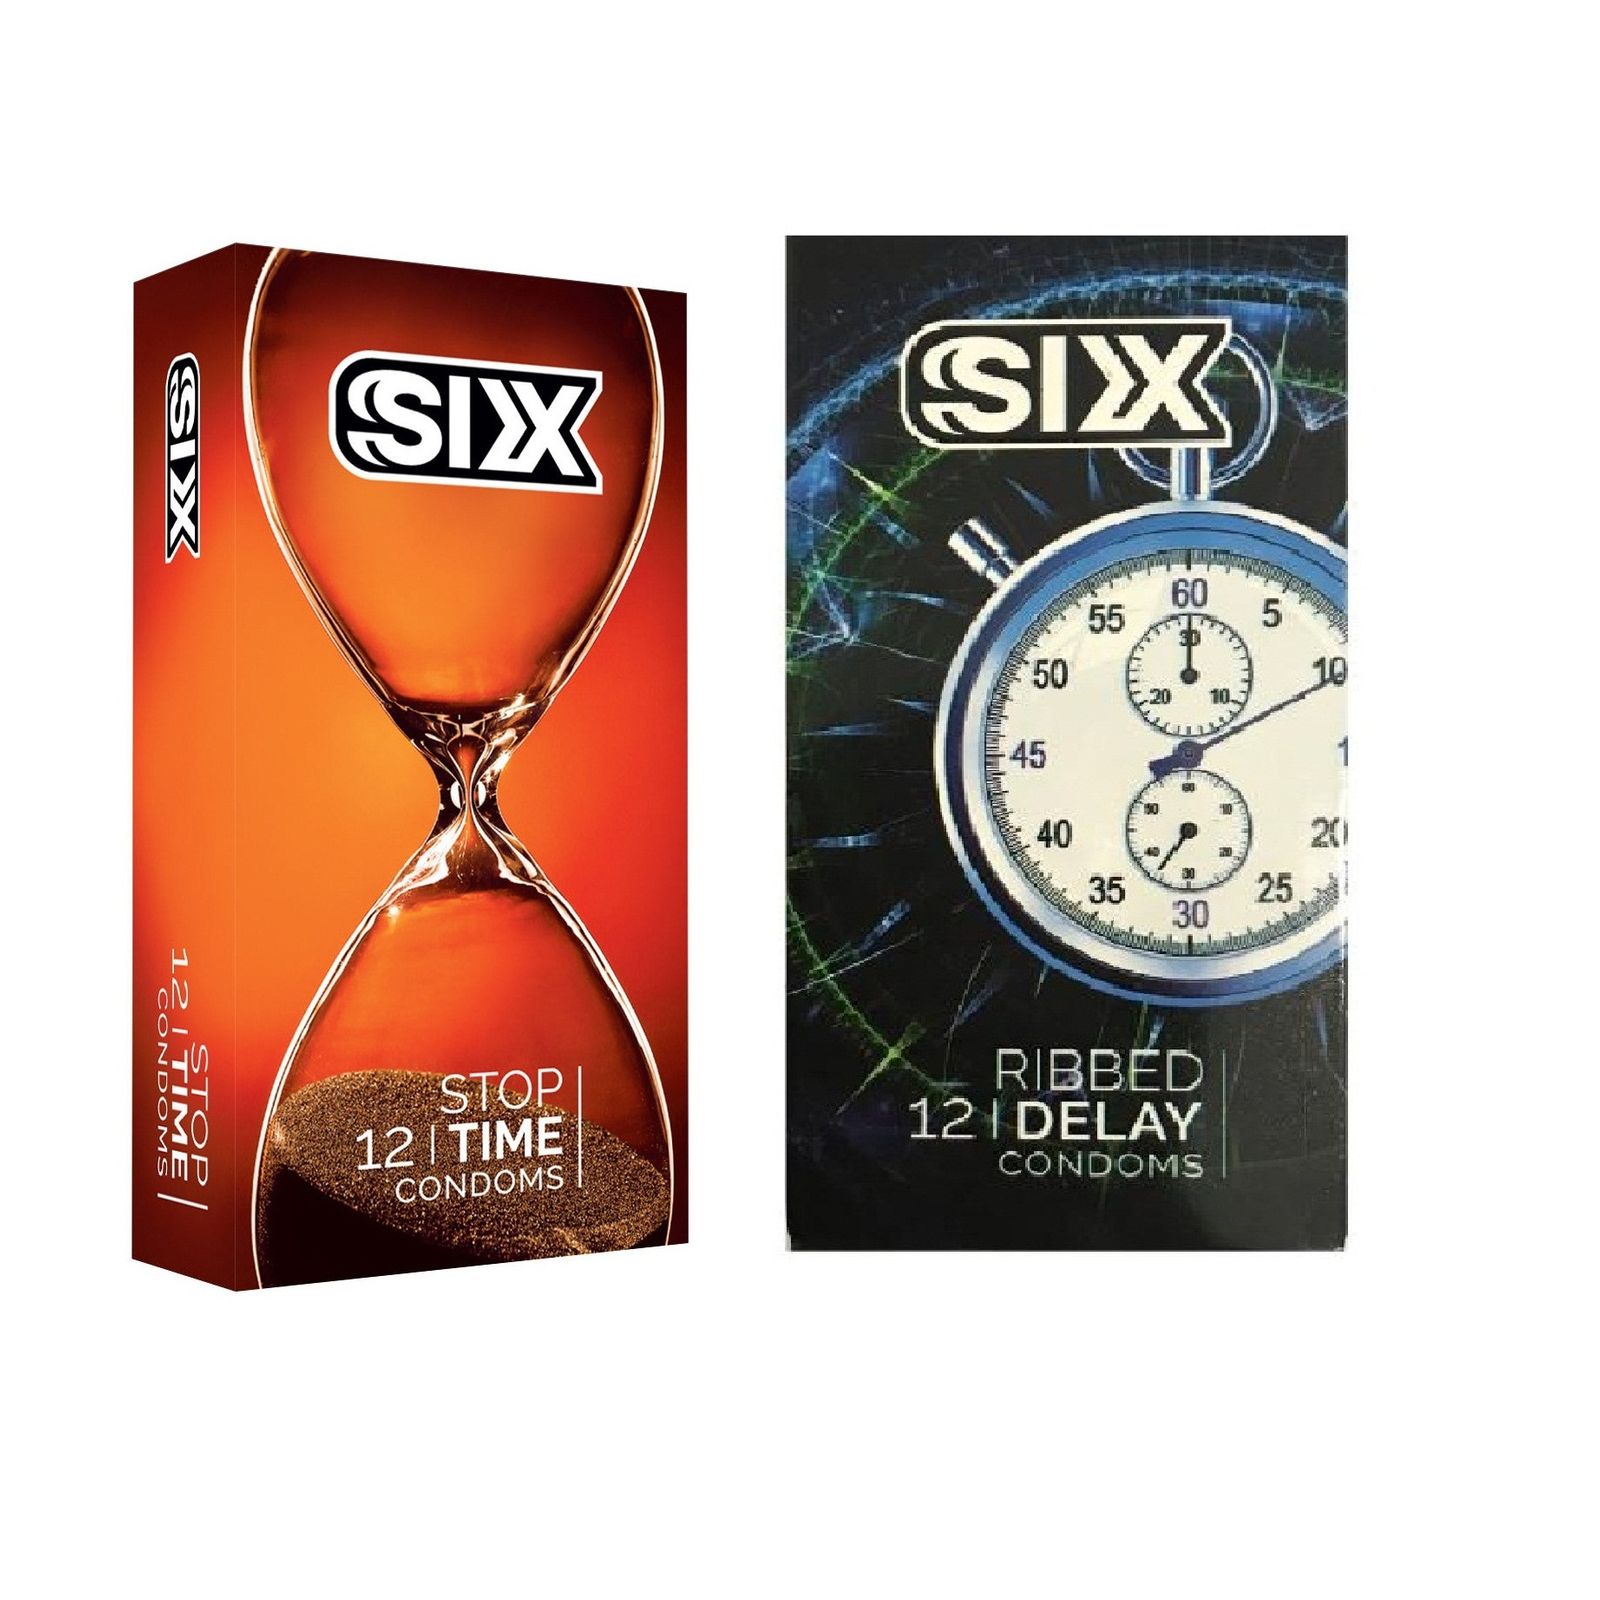 کاندوم سیکس مدل Stop Time بسته 12 عددی به همراه کاندوم سیکس مدل Ribbed Delay بسته 12 عددی -  - 2